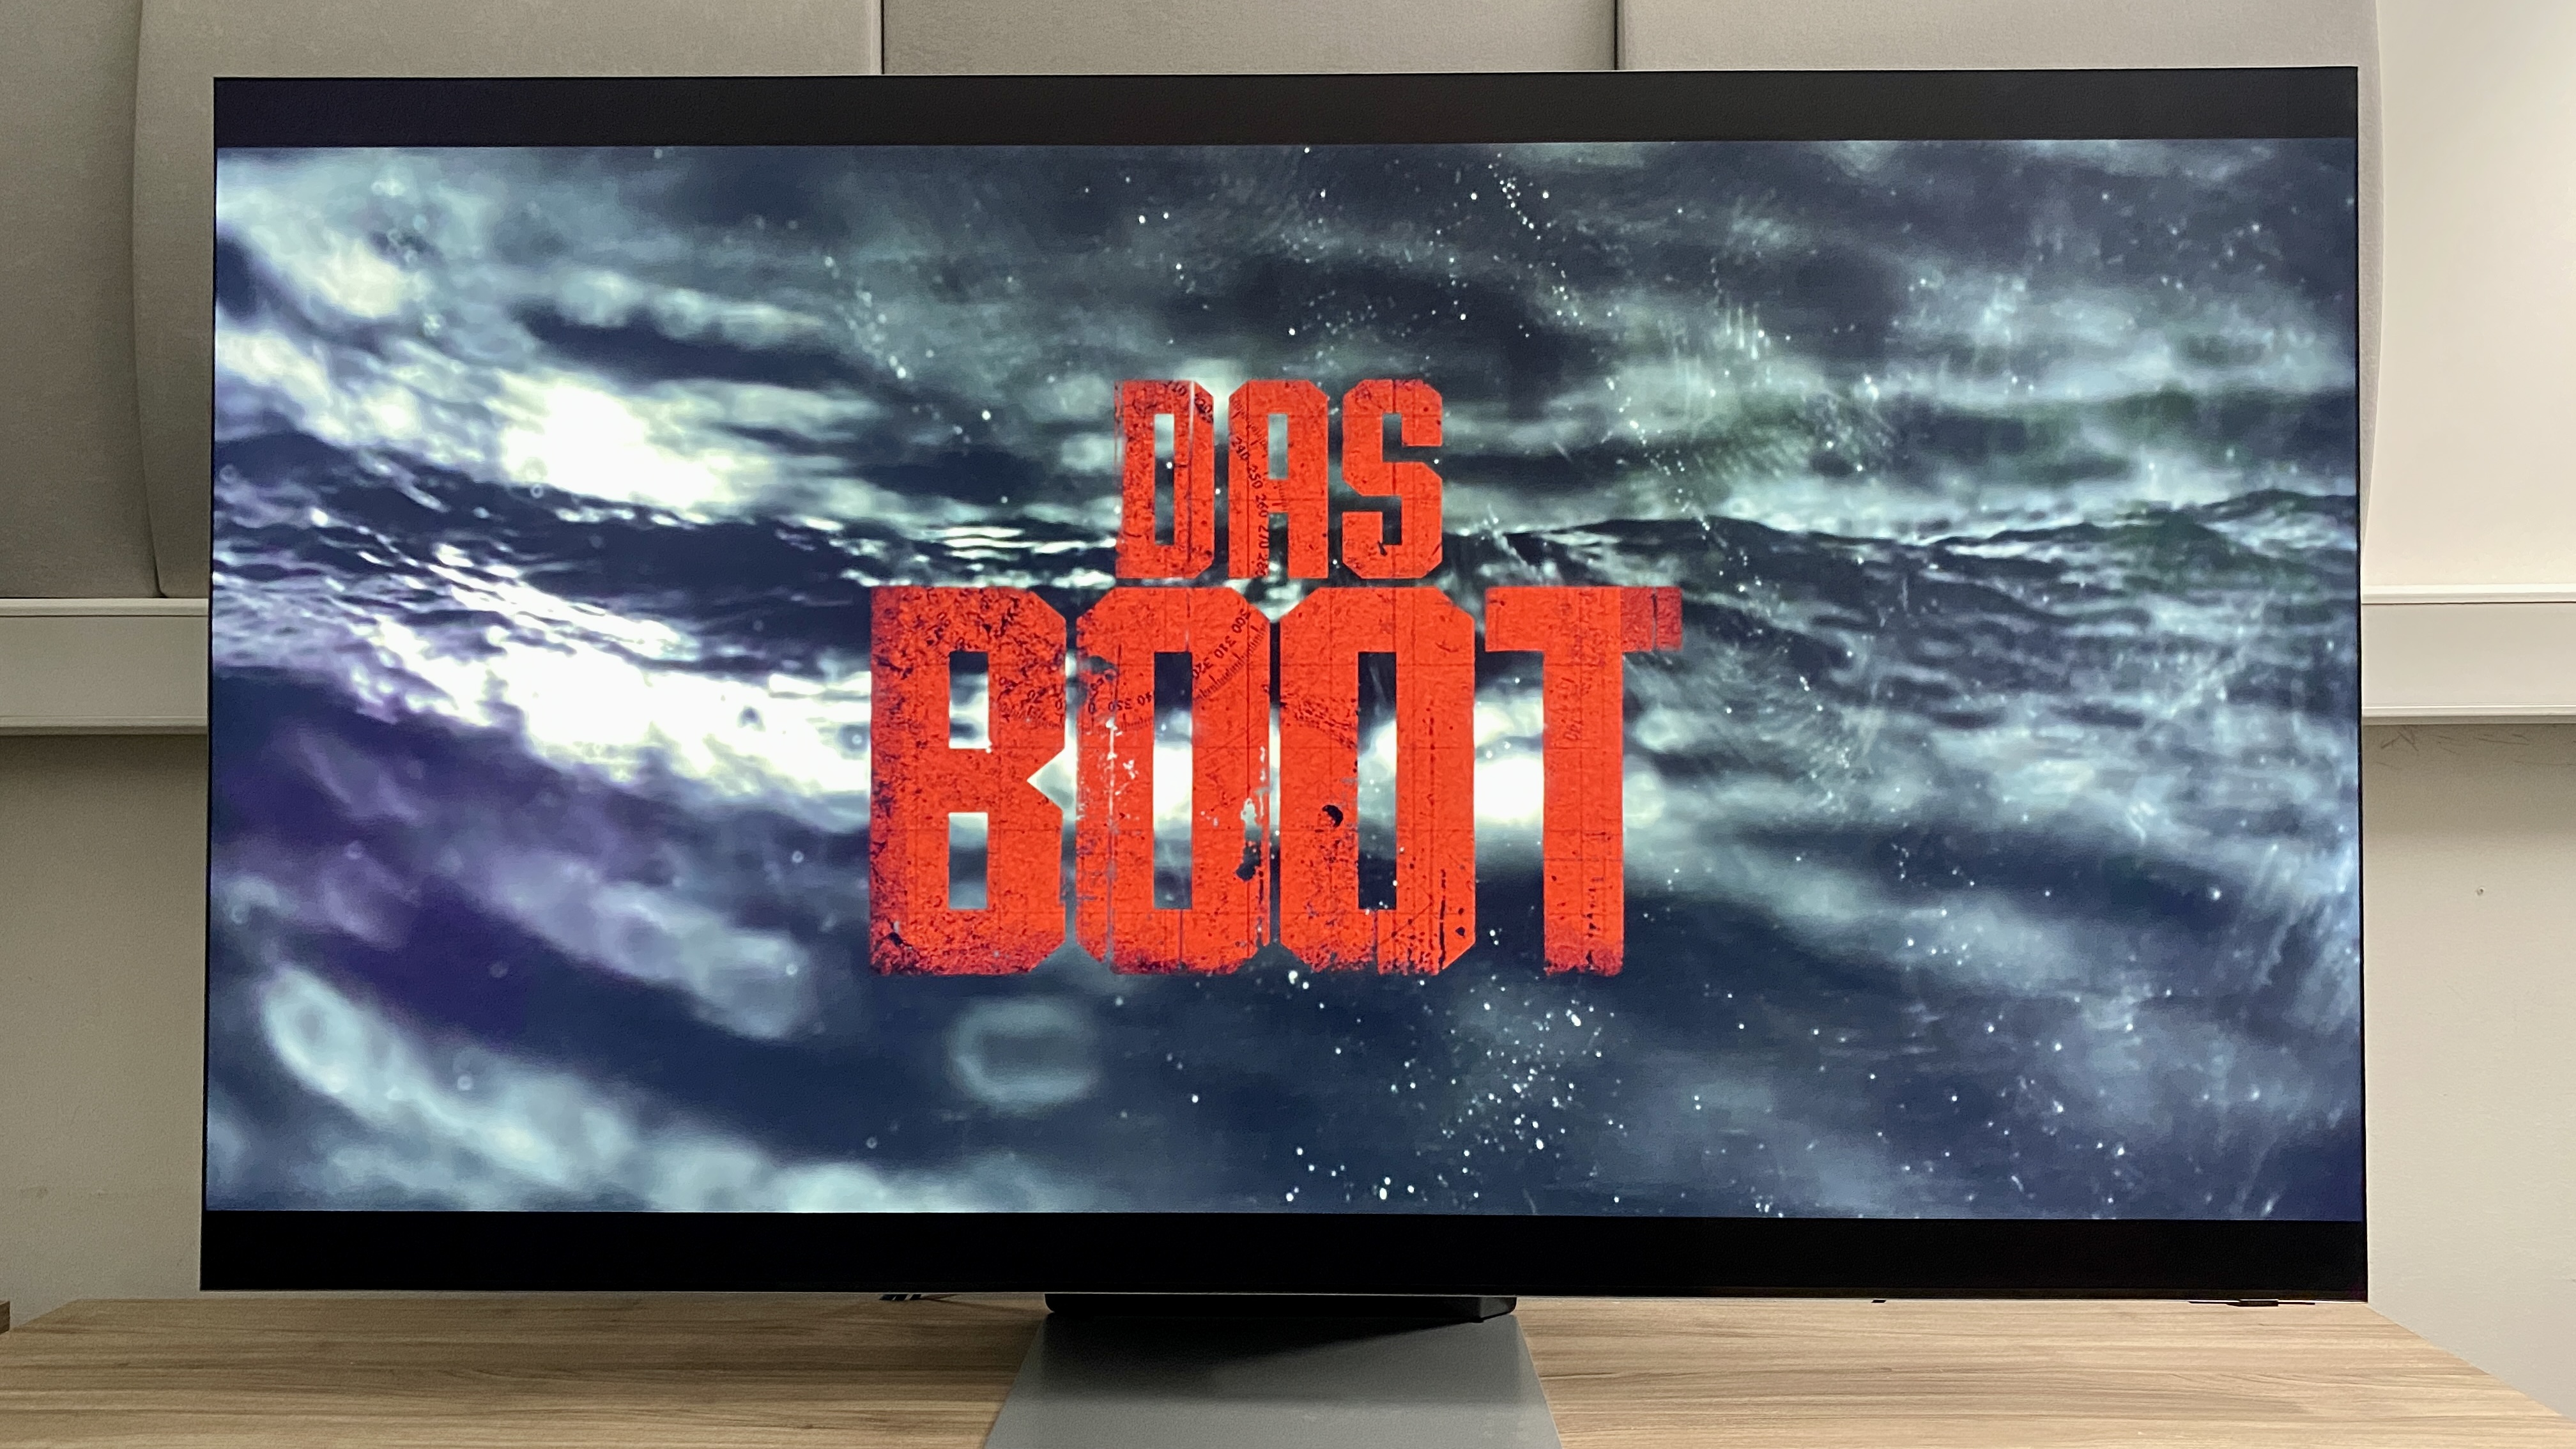 Das Boot in 8K-Auflösung: So streamst du die Serie diesen Sommer